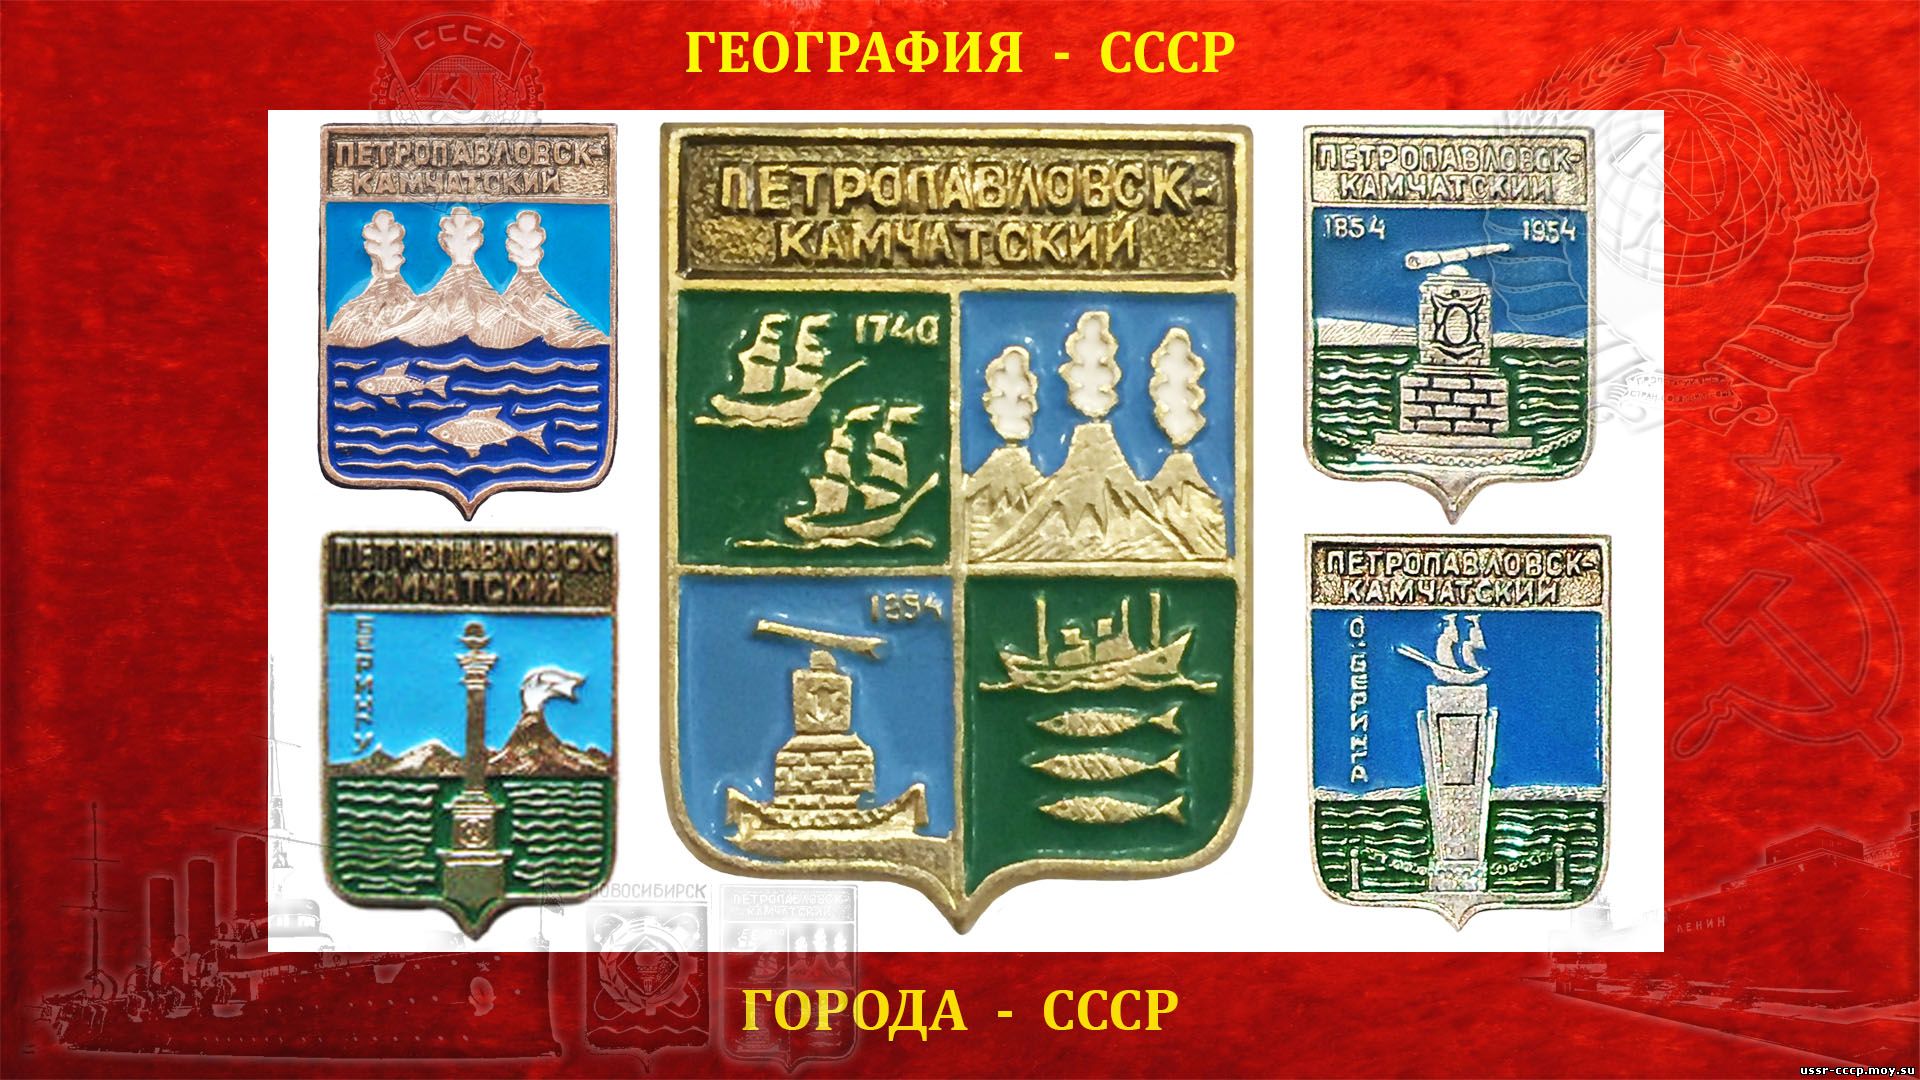 Петропавловск-Камчатский — Город СССР (1697-1957)